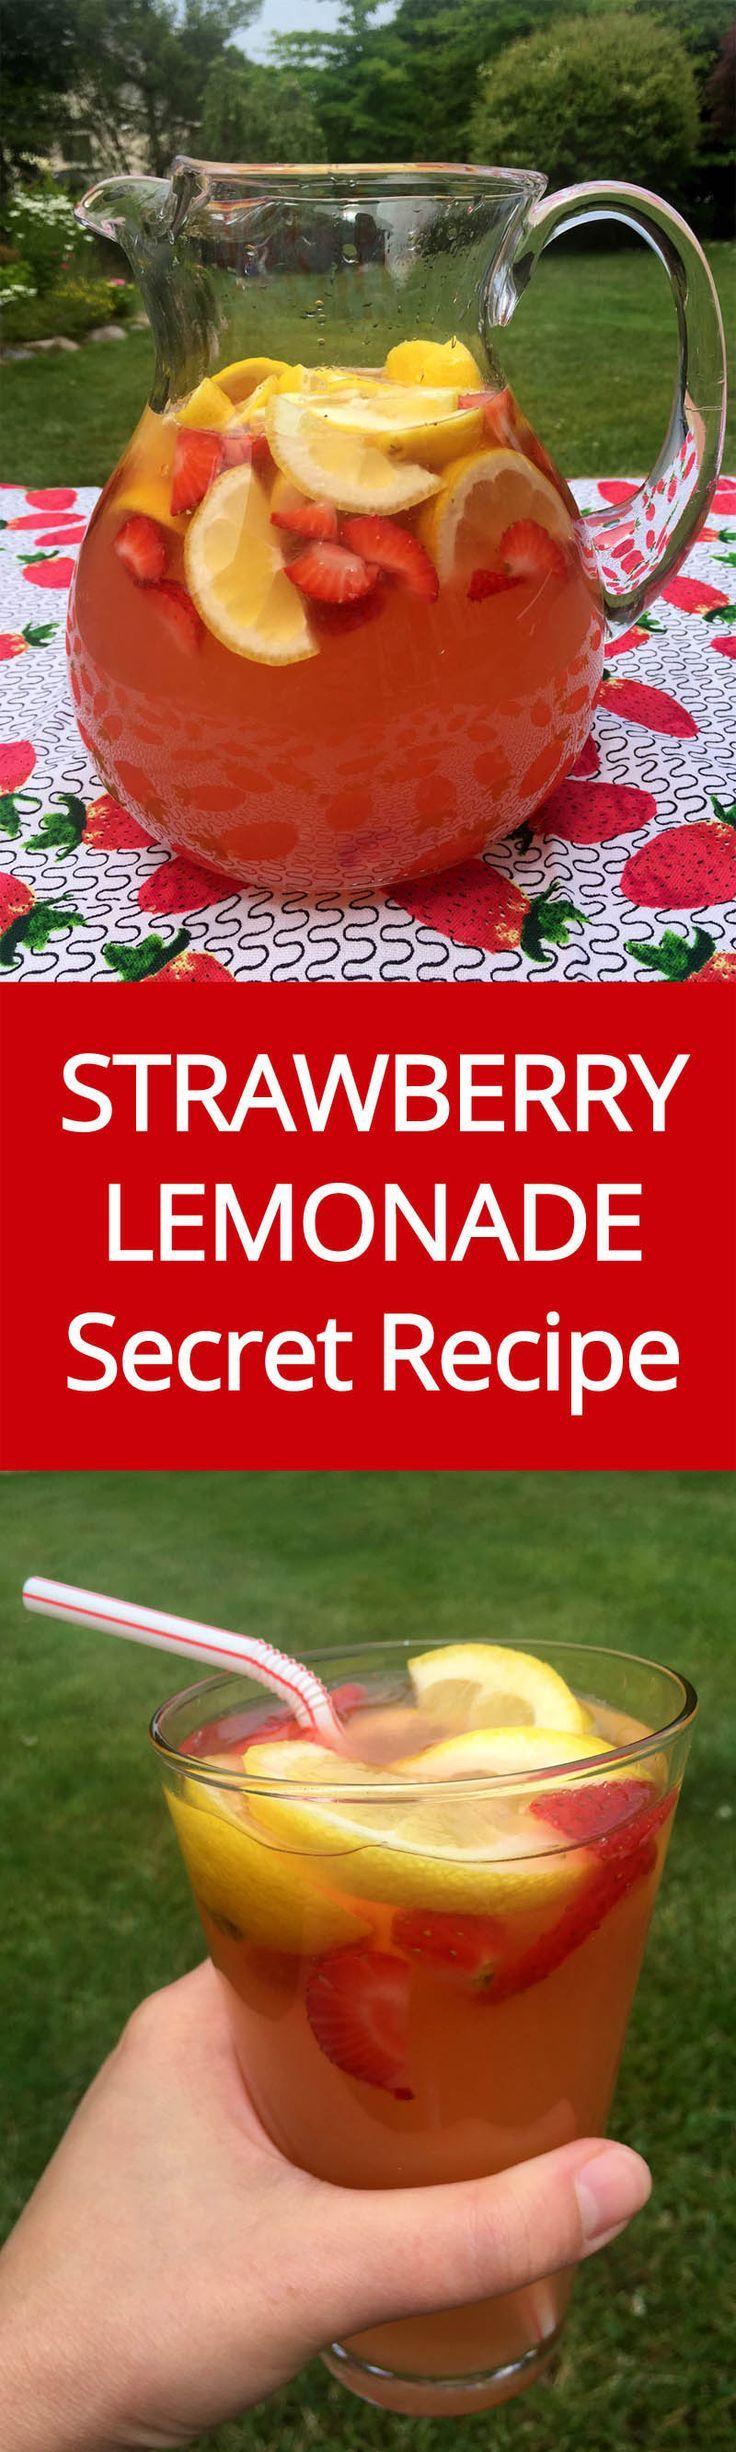 زفاف - Homemade Strawberry Lemonade Recipe With Freshly Squeezed Lemons & Strawberry Slices